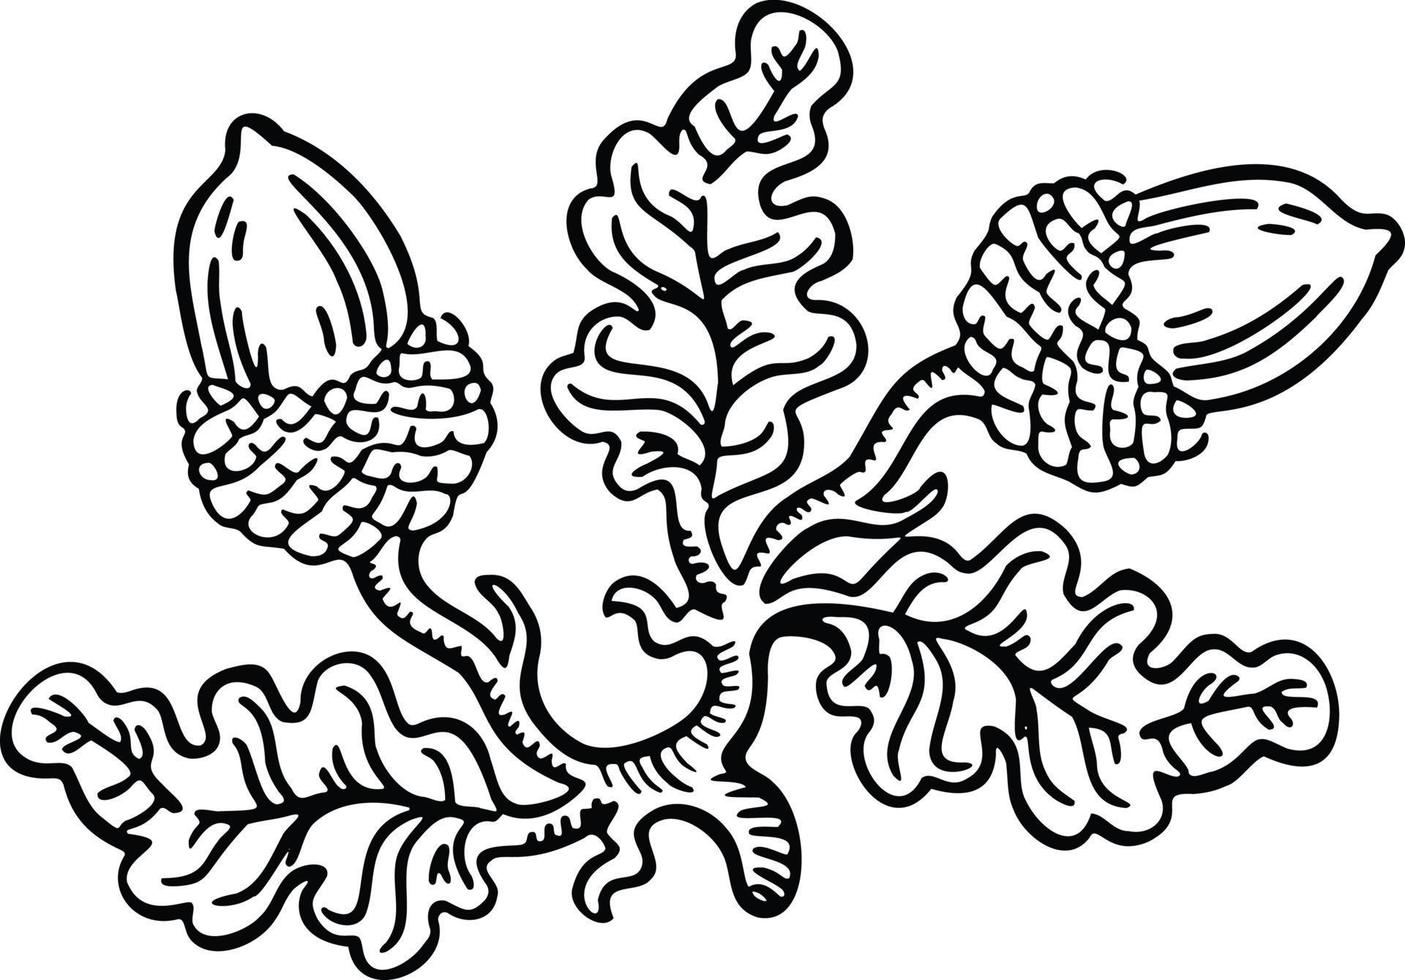 zwart-wit lineair teken, aanduiding van eik met eikels, met de hand getekende illustratievector vector